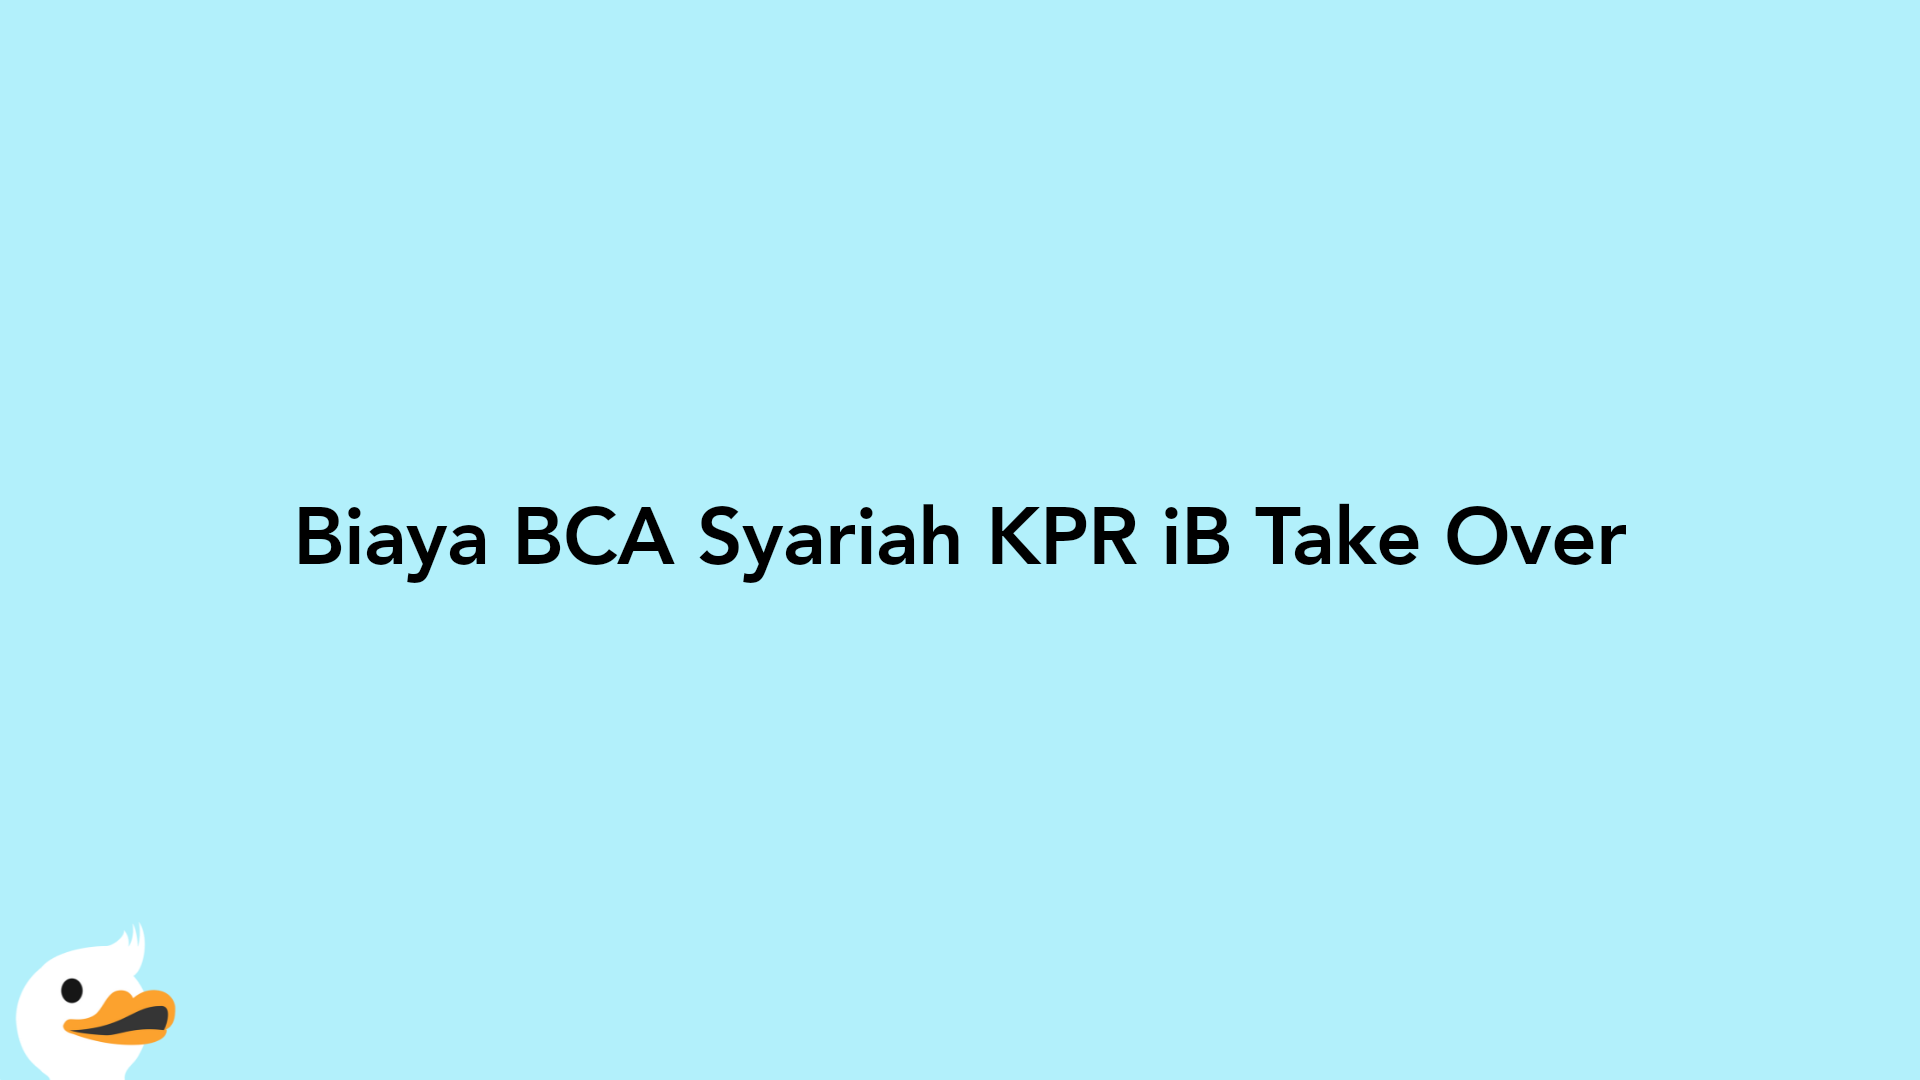 Biaya BCA Syariah KPR iB Take Over